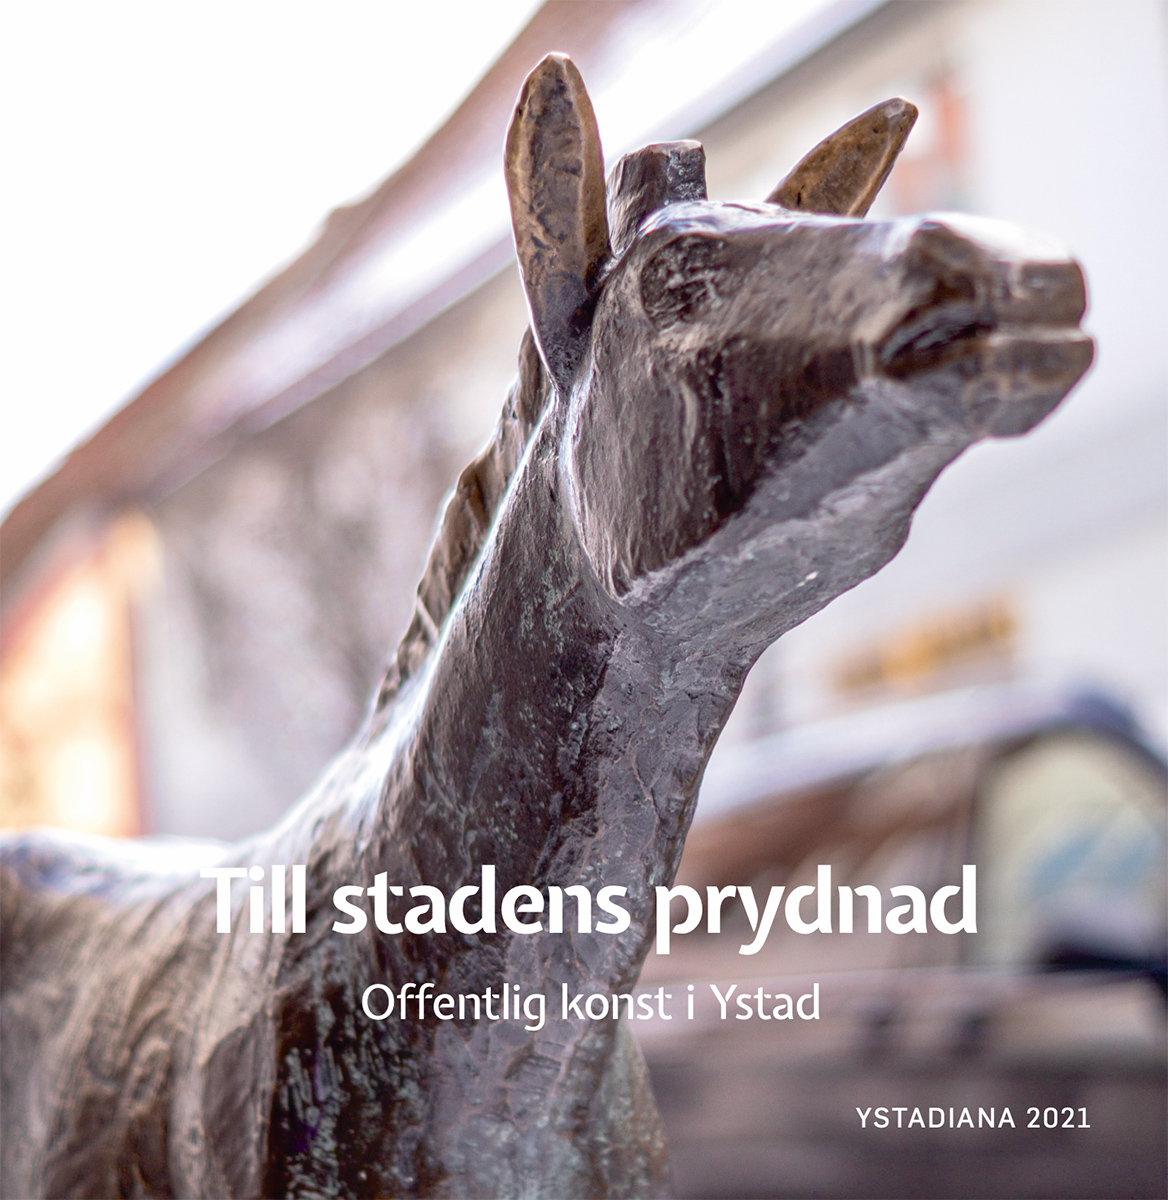 Till stadens prydnad – Offentlig konst i Ystad, red, Håkan Nilsson, 2021